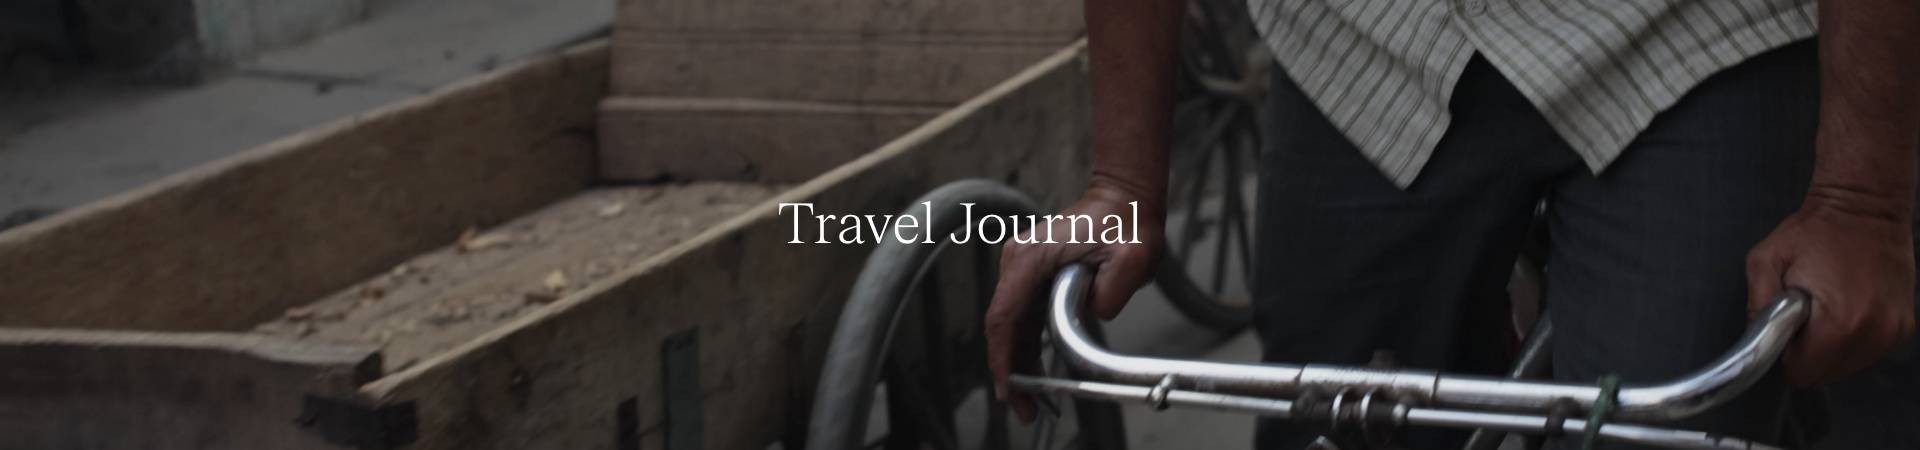 Travel Journal.jpg